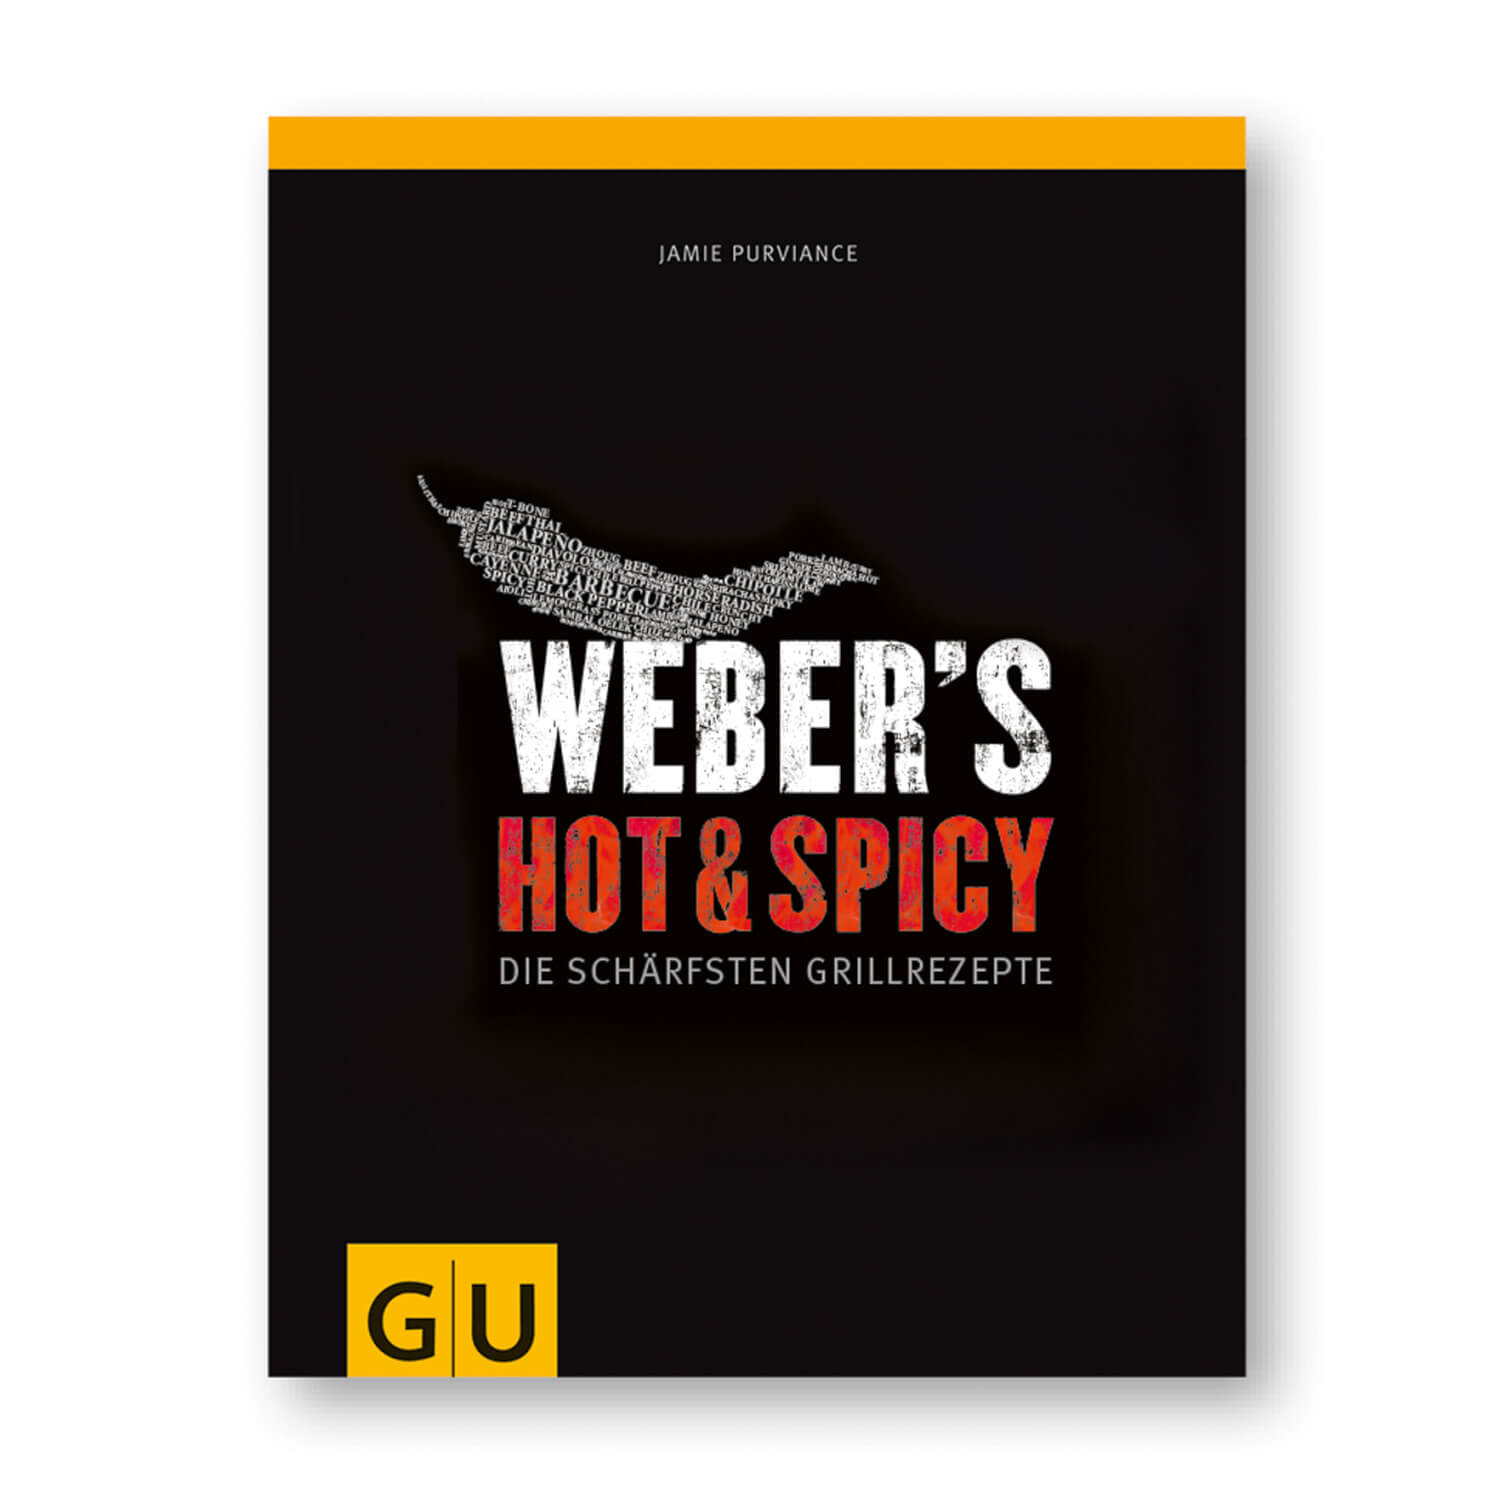 Weber's Hot & Spicy - Die schärfsten Grillrezepte